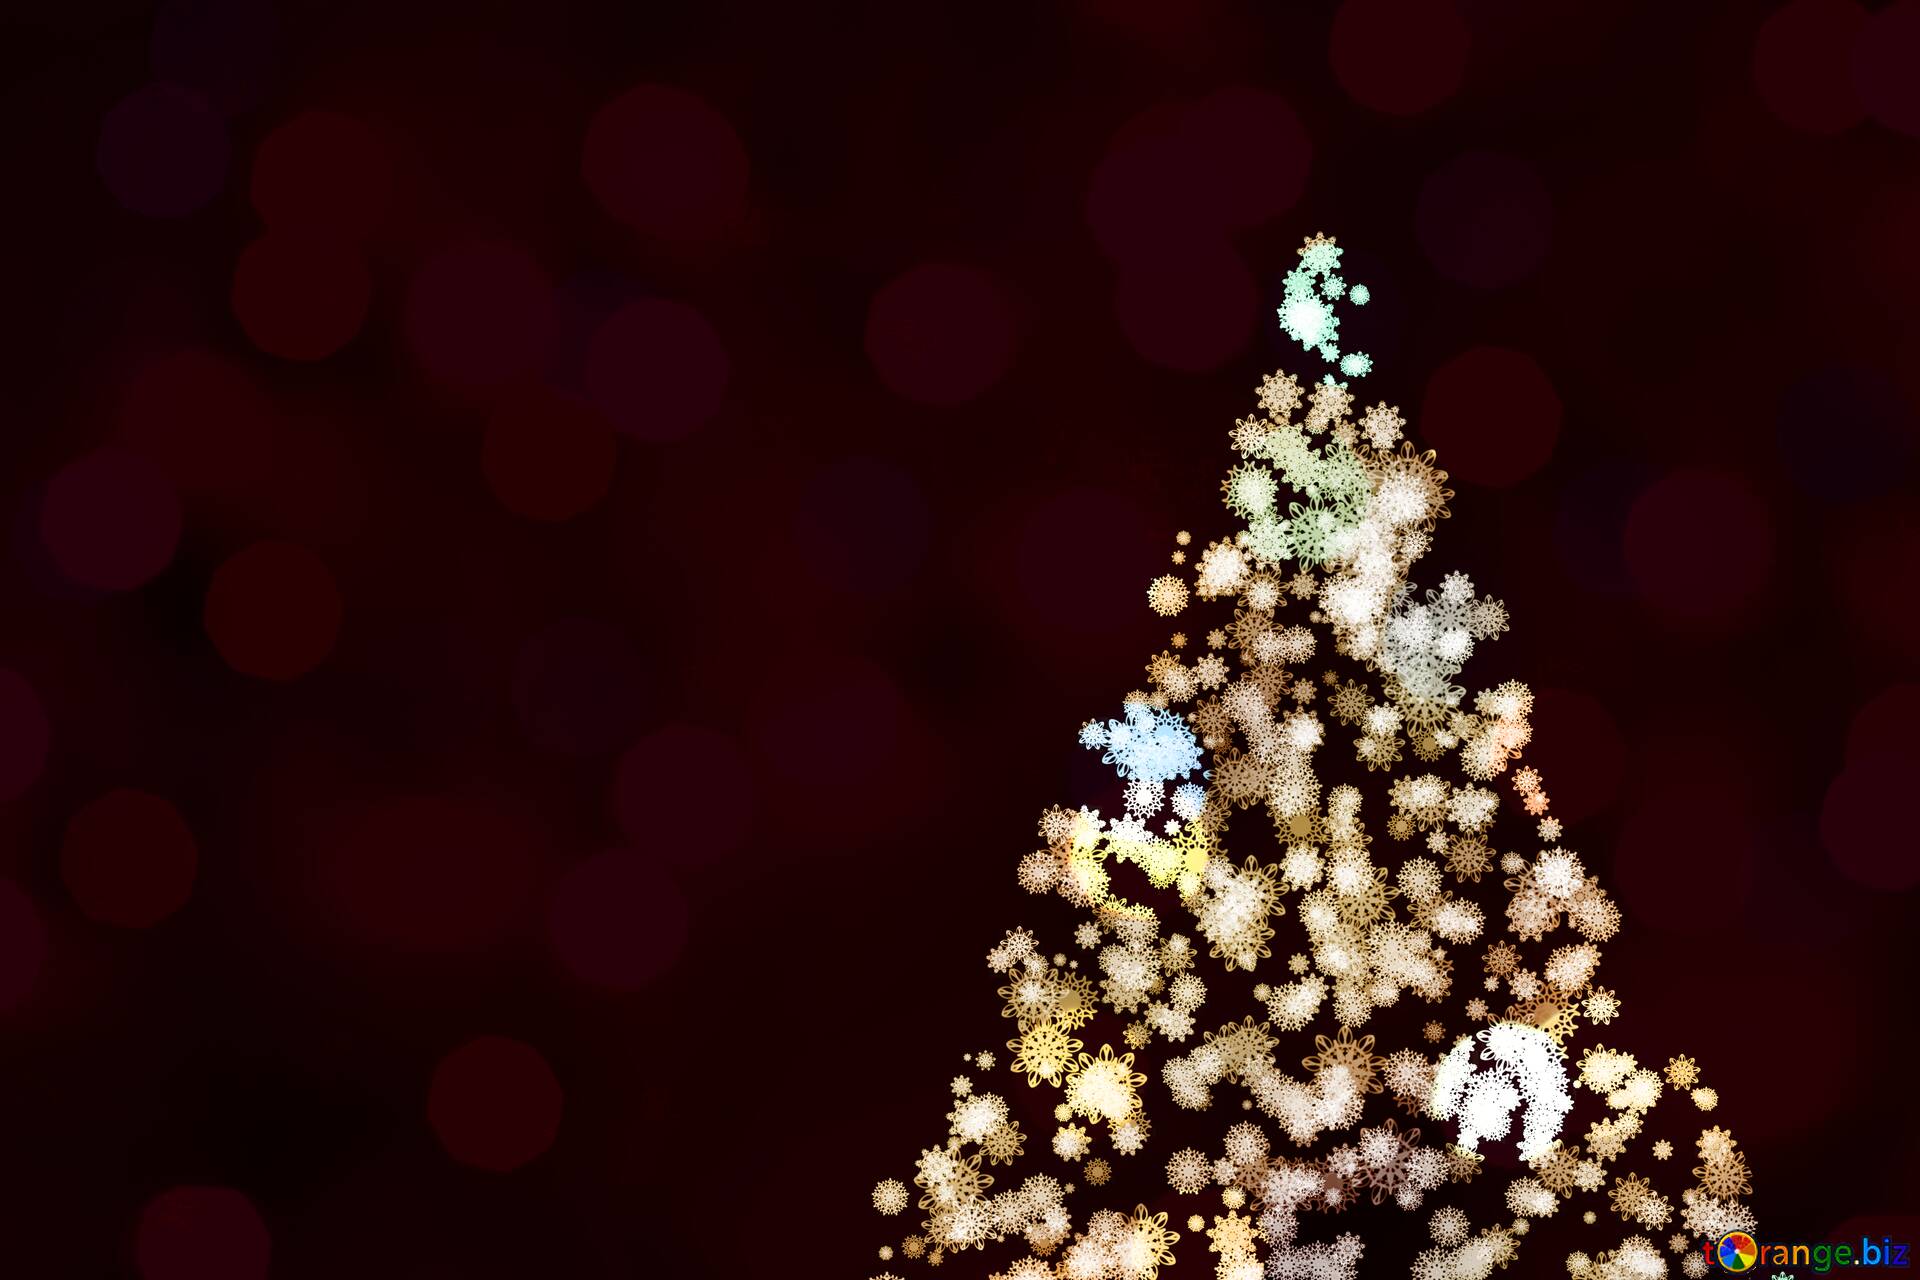 Hãy cùng ngắm nhìn những bức ảnh trong mơ về cây thông Giáng sinh từ tuyết rơi đầy kỳ diệu nhé! Tại đây, bạn có thể tải về hoàn toàn miễn phí những hình ảnh cây thông đẹp nhất và khám phá thêm nhiều hình ảnh khác về mùa lễ hội rực rỡ. Hãy cùng chúng tôi đón chờ một mùa Giáng sinh tràn đầy niềm vui và ấm áp nhé!